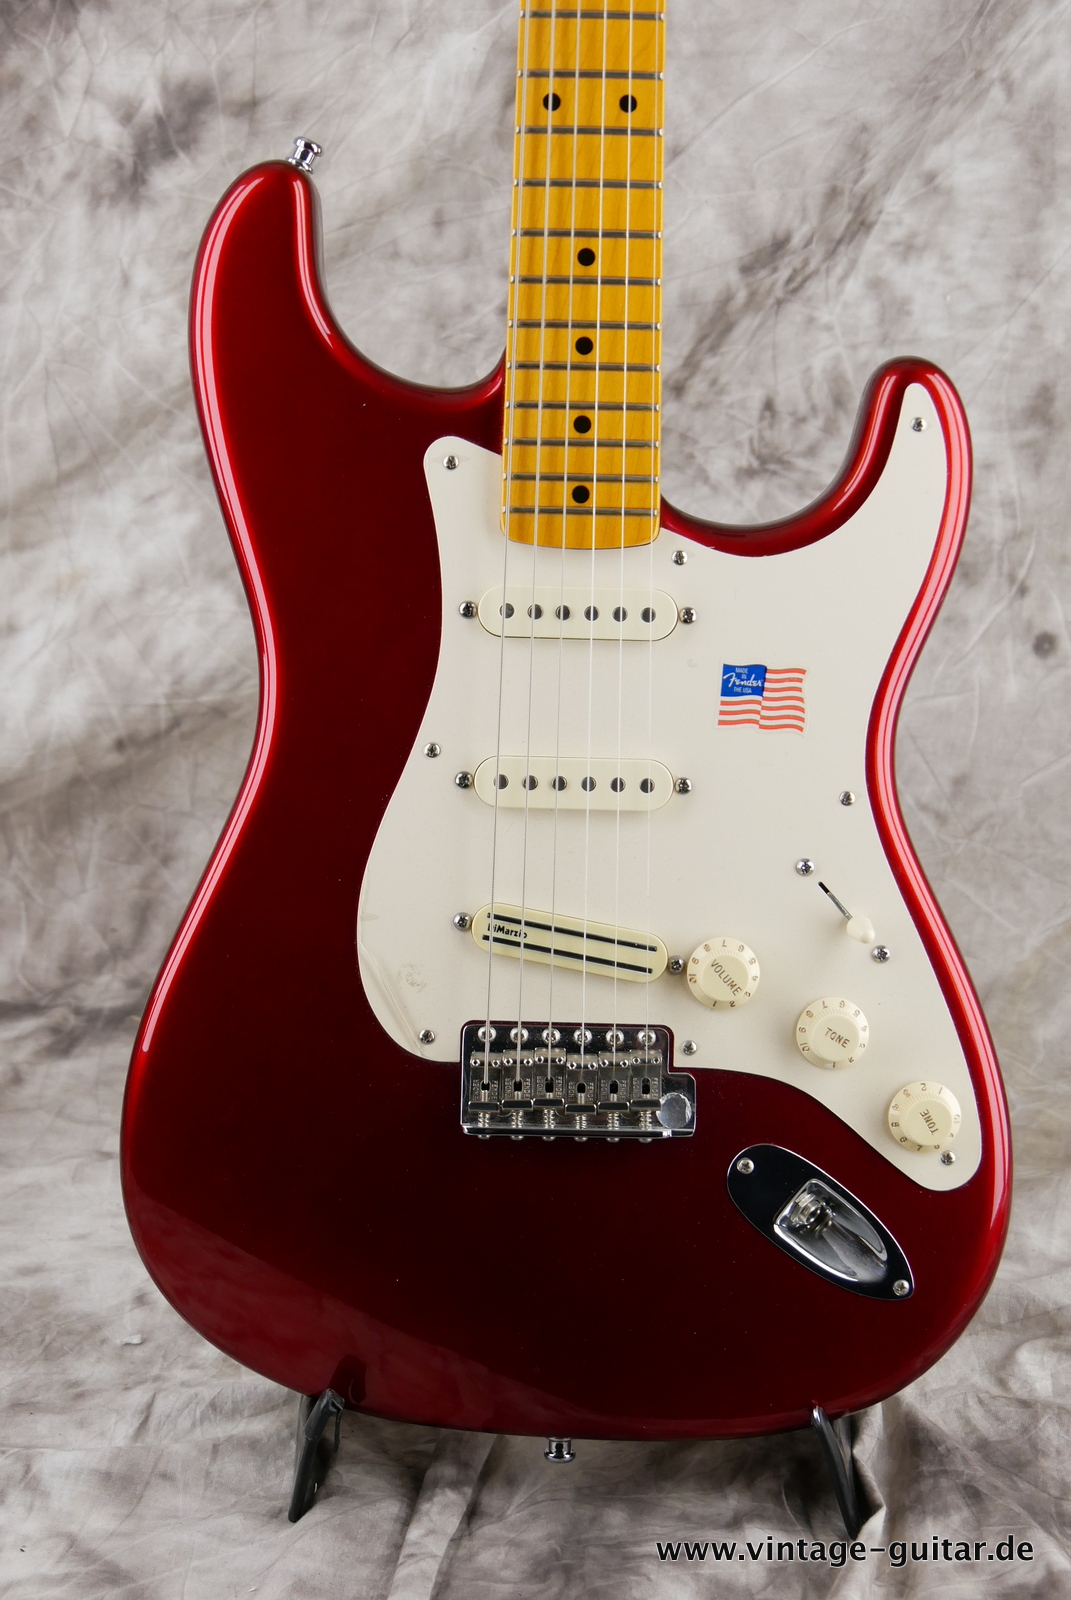 img/vintage/5125/Fender_Stratocaster_Vintage_Hot_Rod_candy_apple_red_USA_2010-003.JPG